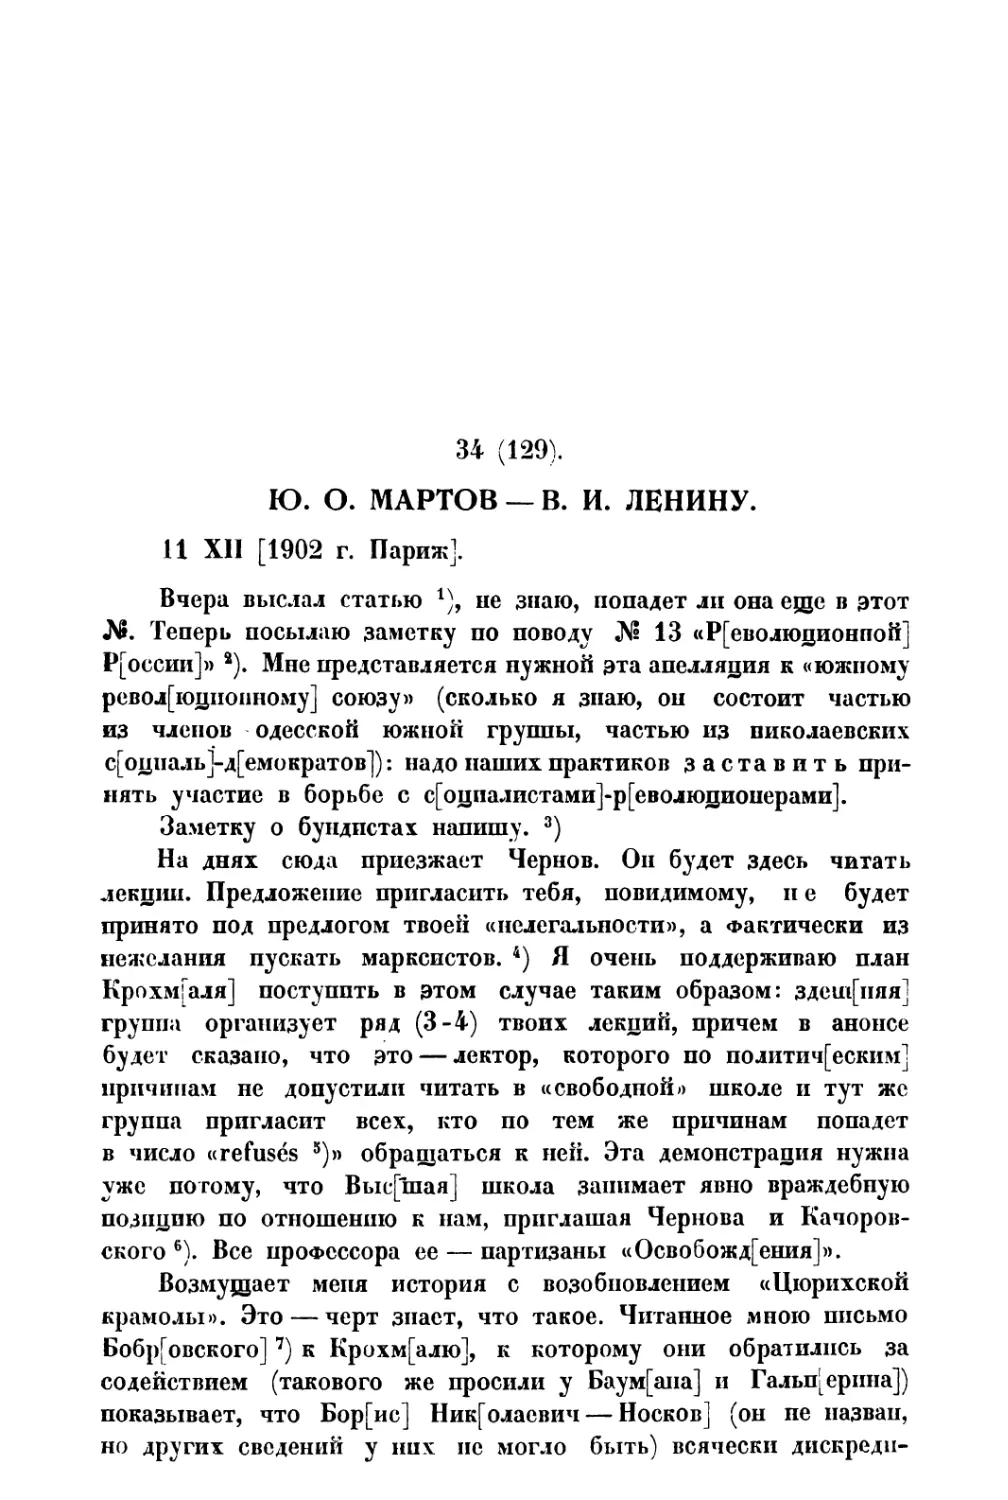 34. » В. И. Ленину от 11 XII 1902 г